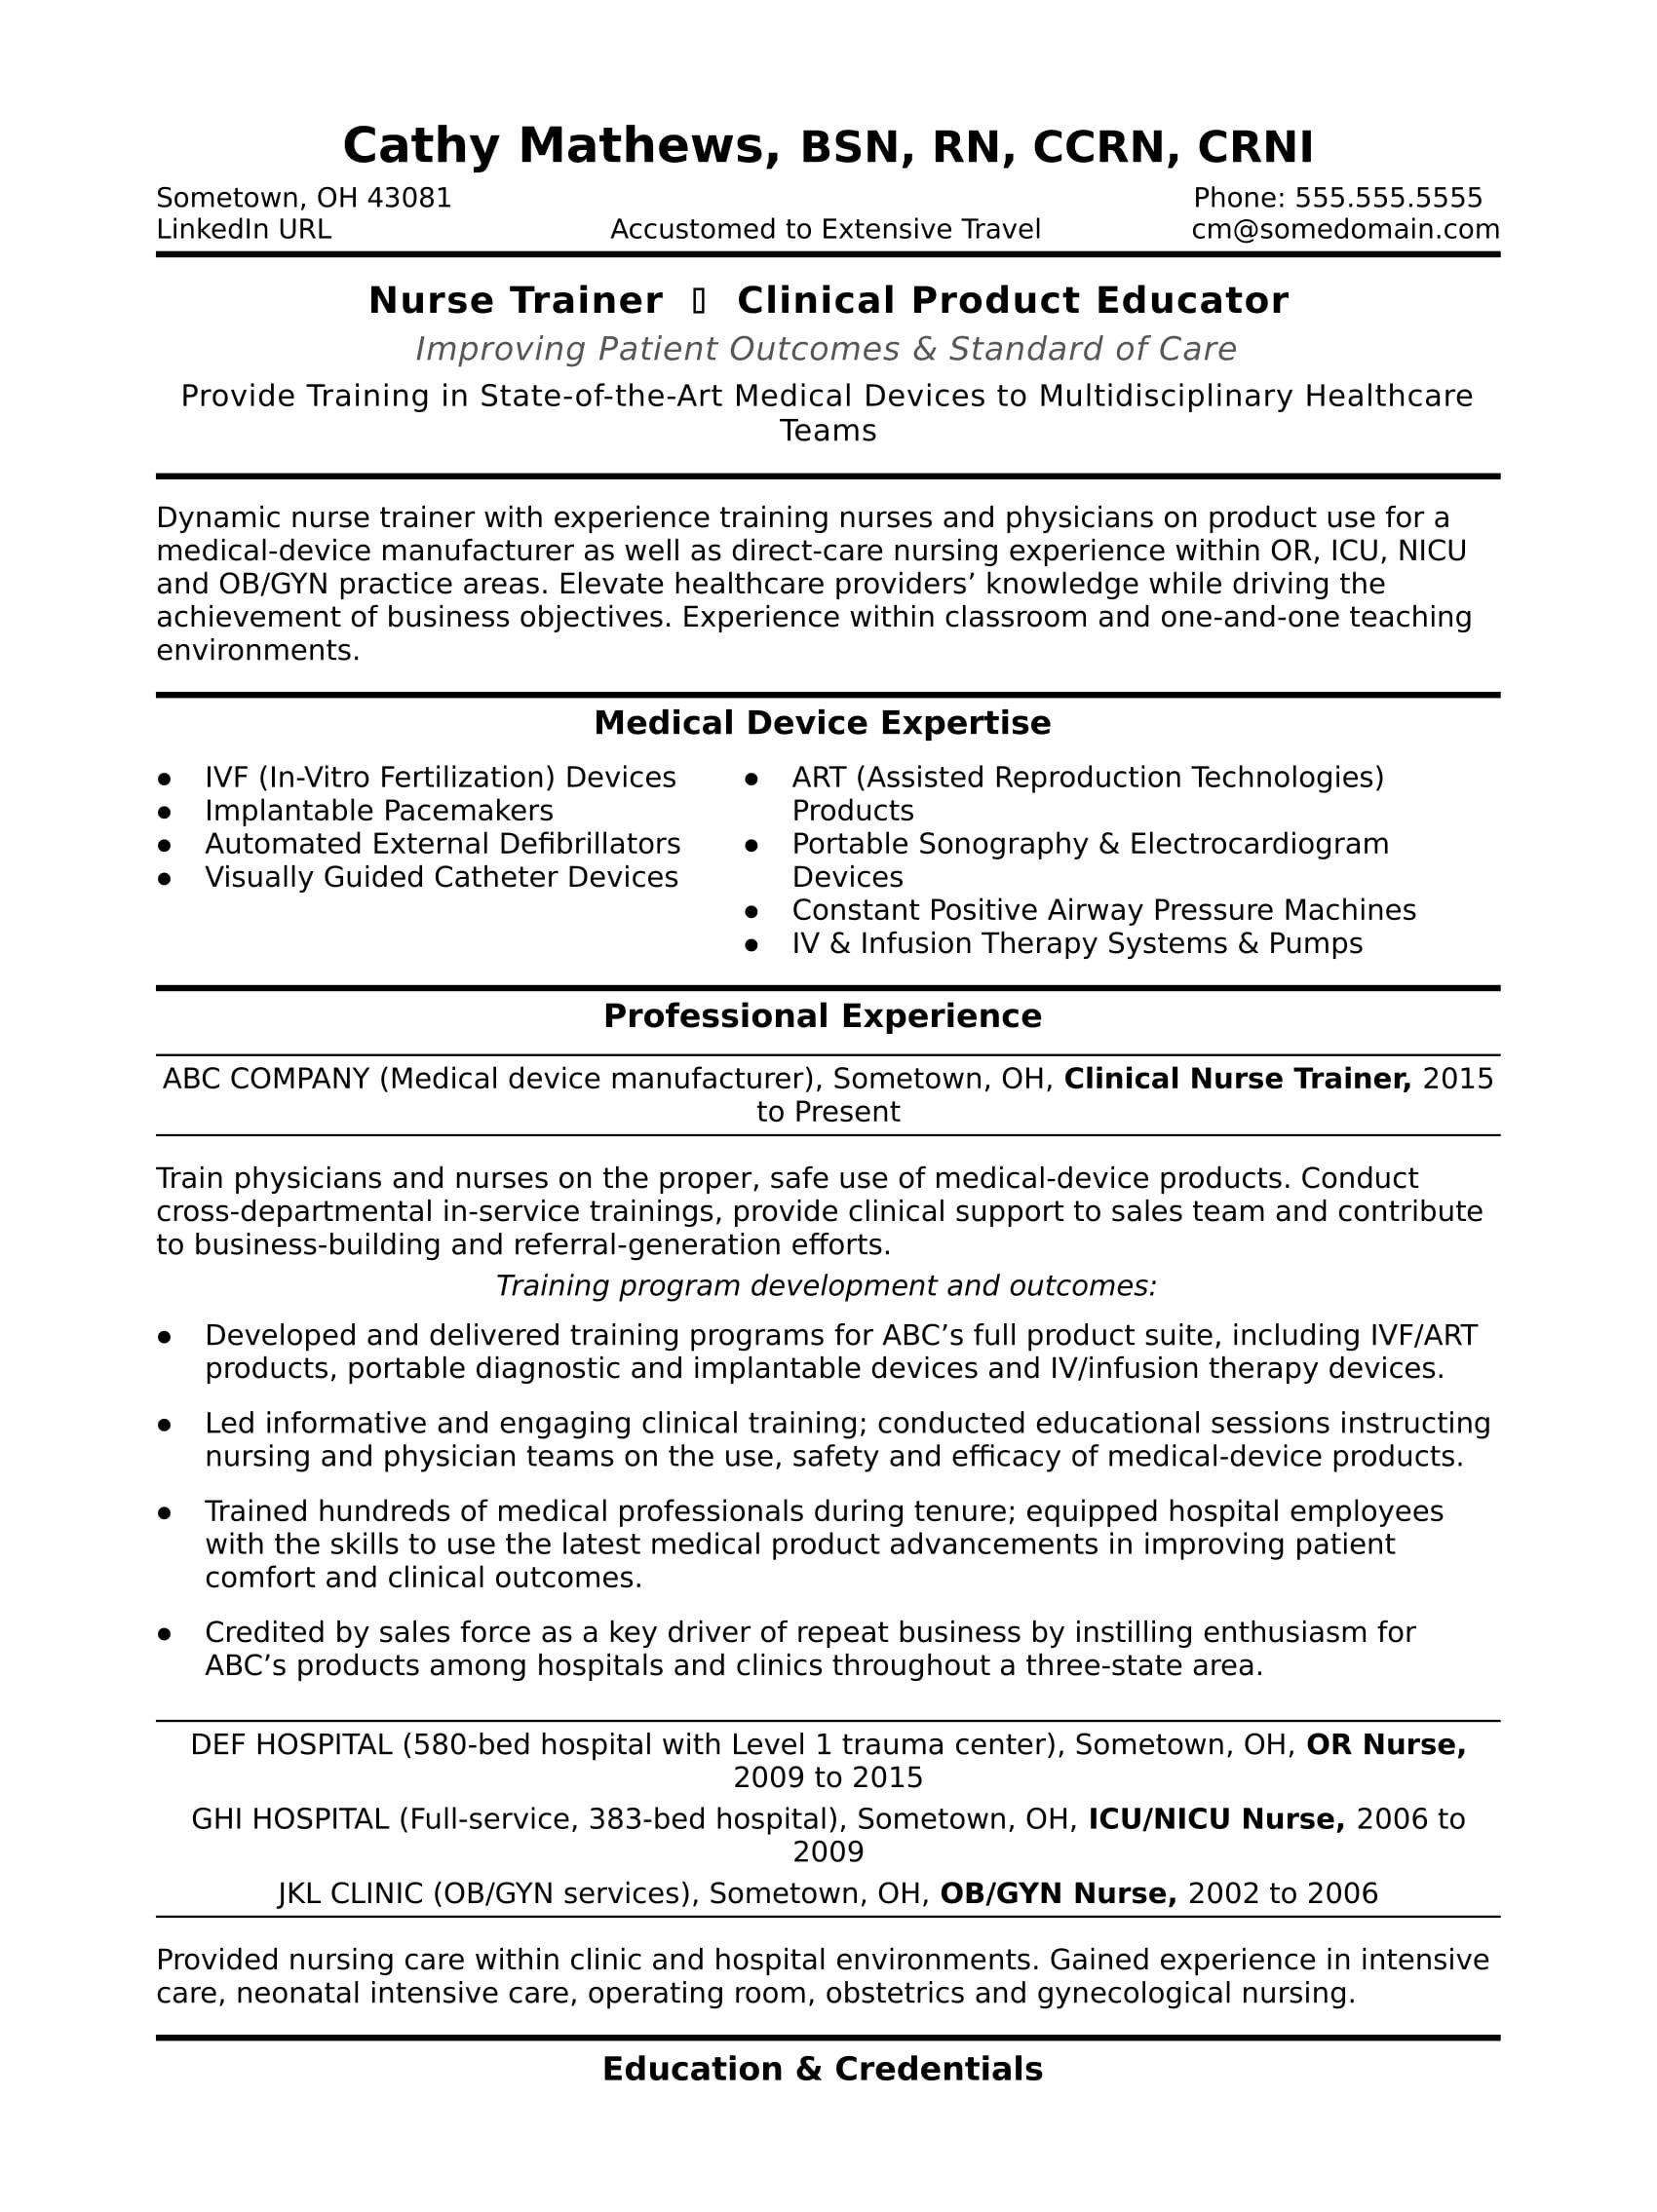 Sample Objectives In Resume for Icu Nurse Nurse Trainer Resume Sample Monster.com